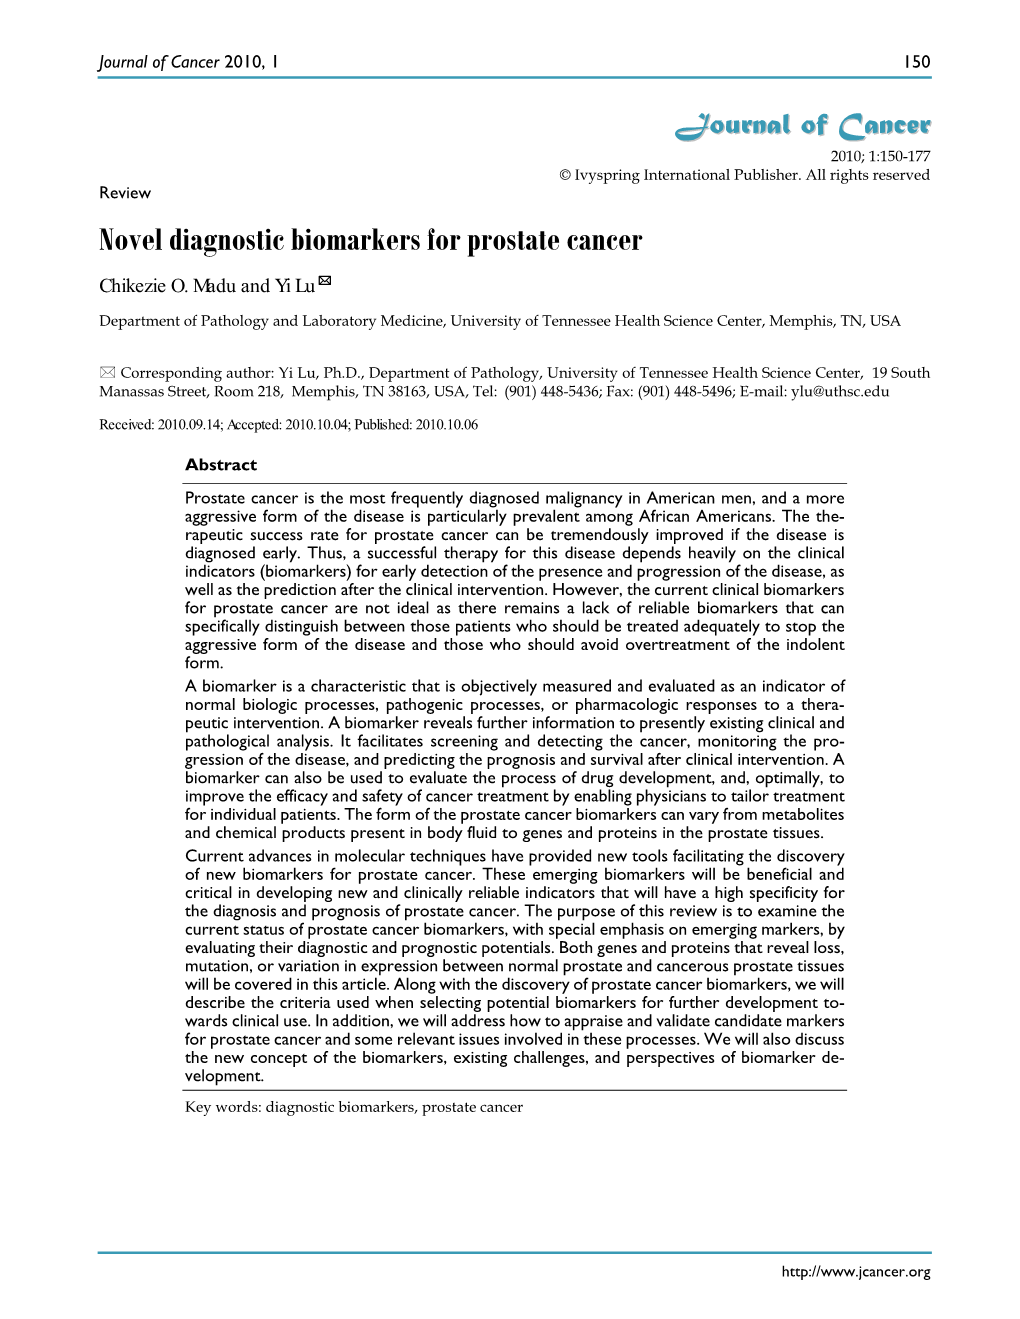 Novel Diagnostic Biomarkers for Prostate Cancer Chikezie O